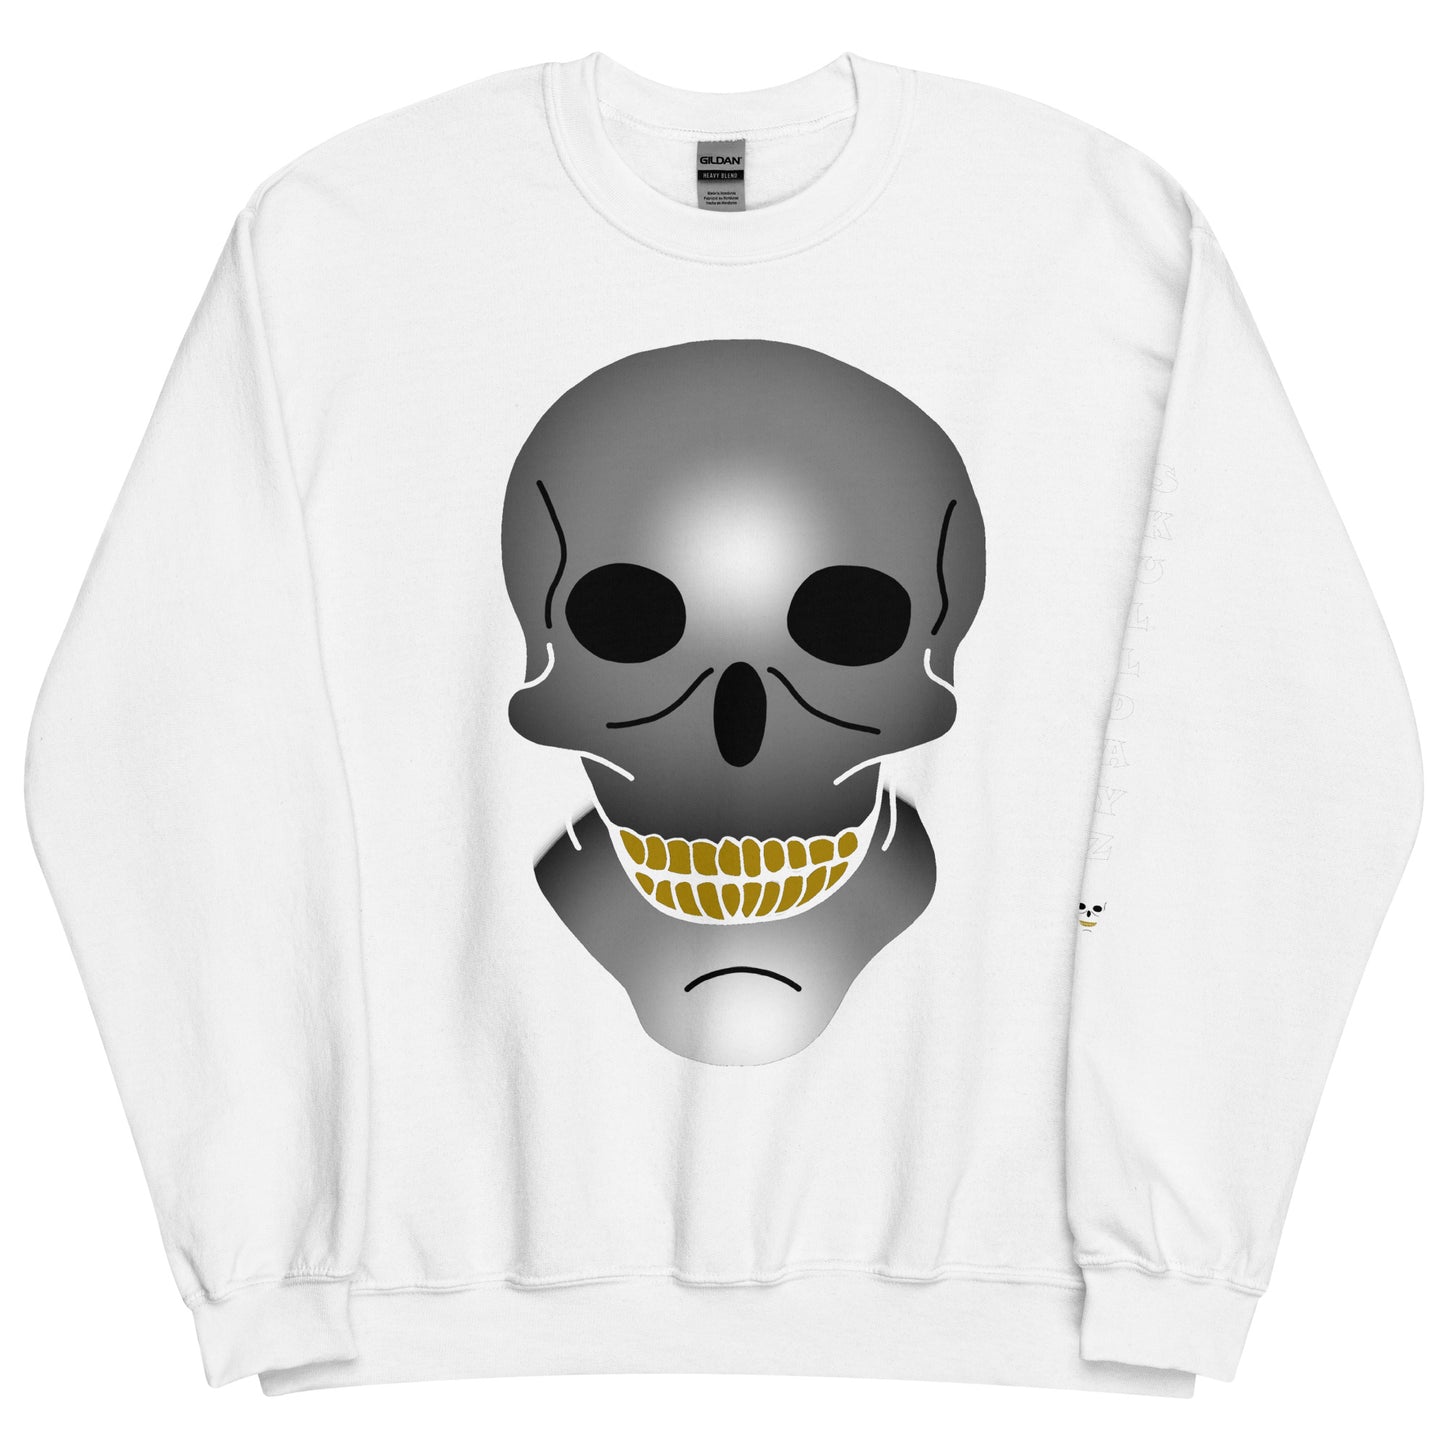 Unisex Skull Dayz Sweatshirt - Skull Dayz